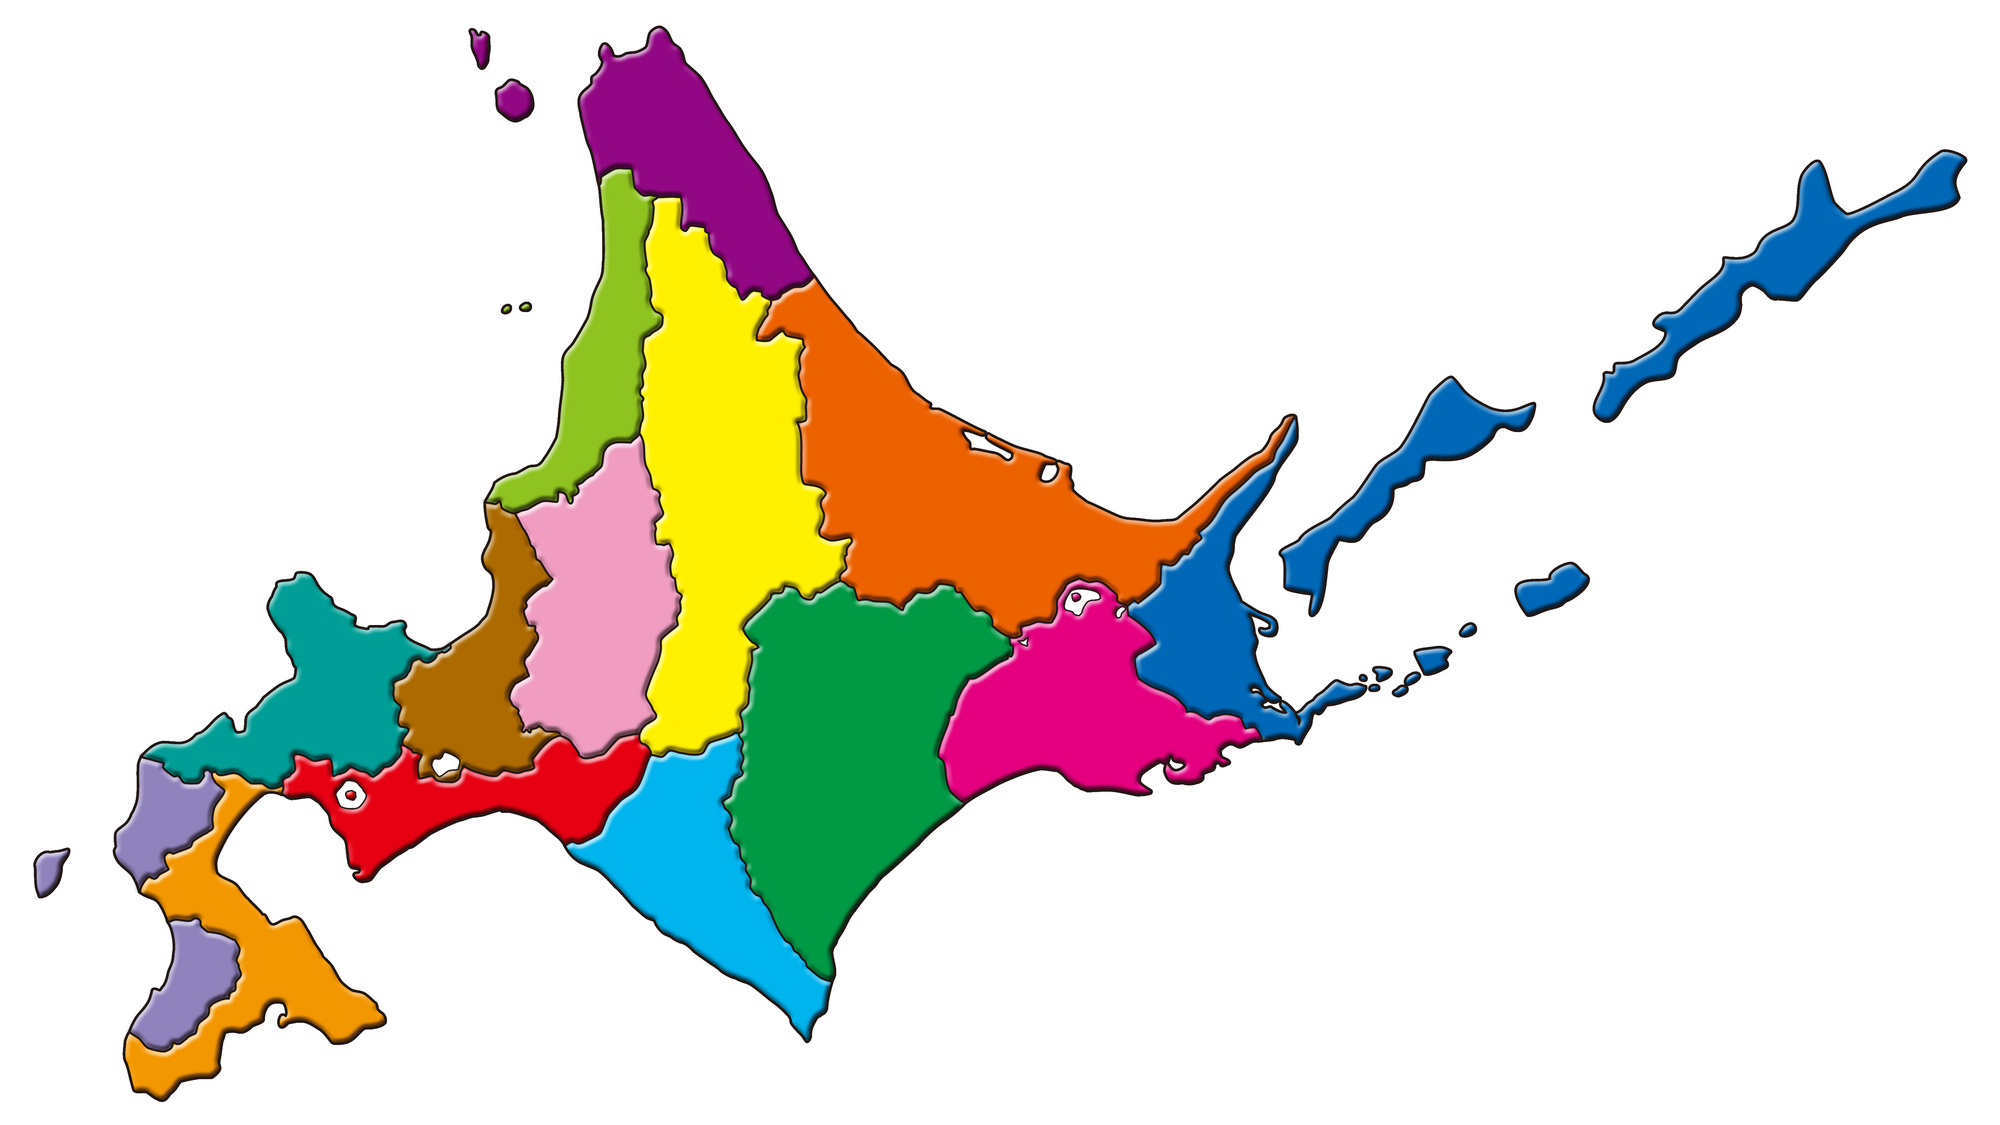 北海道の行政区域は14に分かれており、ピンクの部分が「空知」地域。